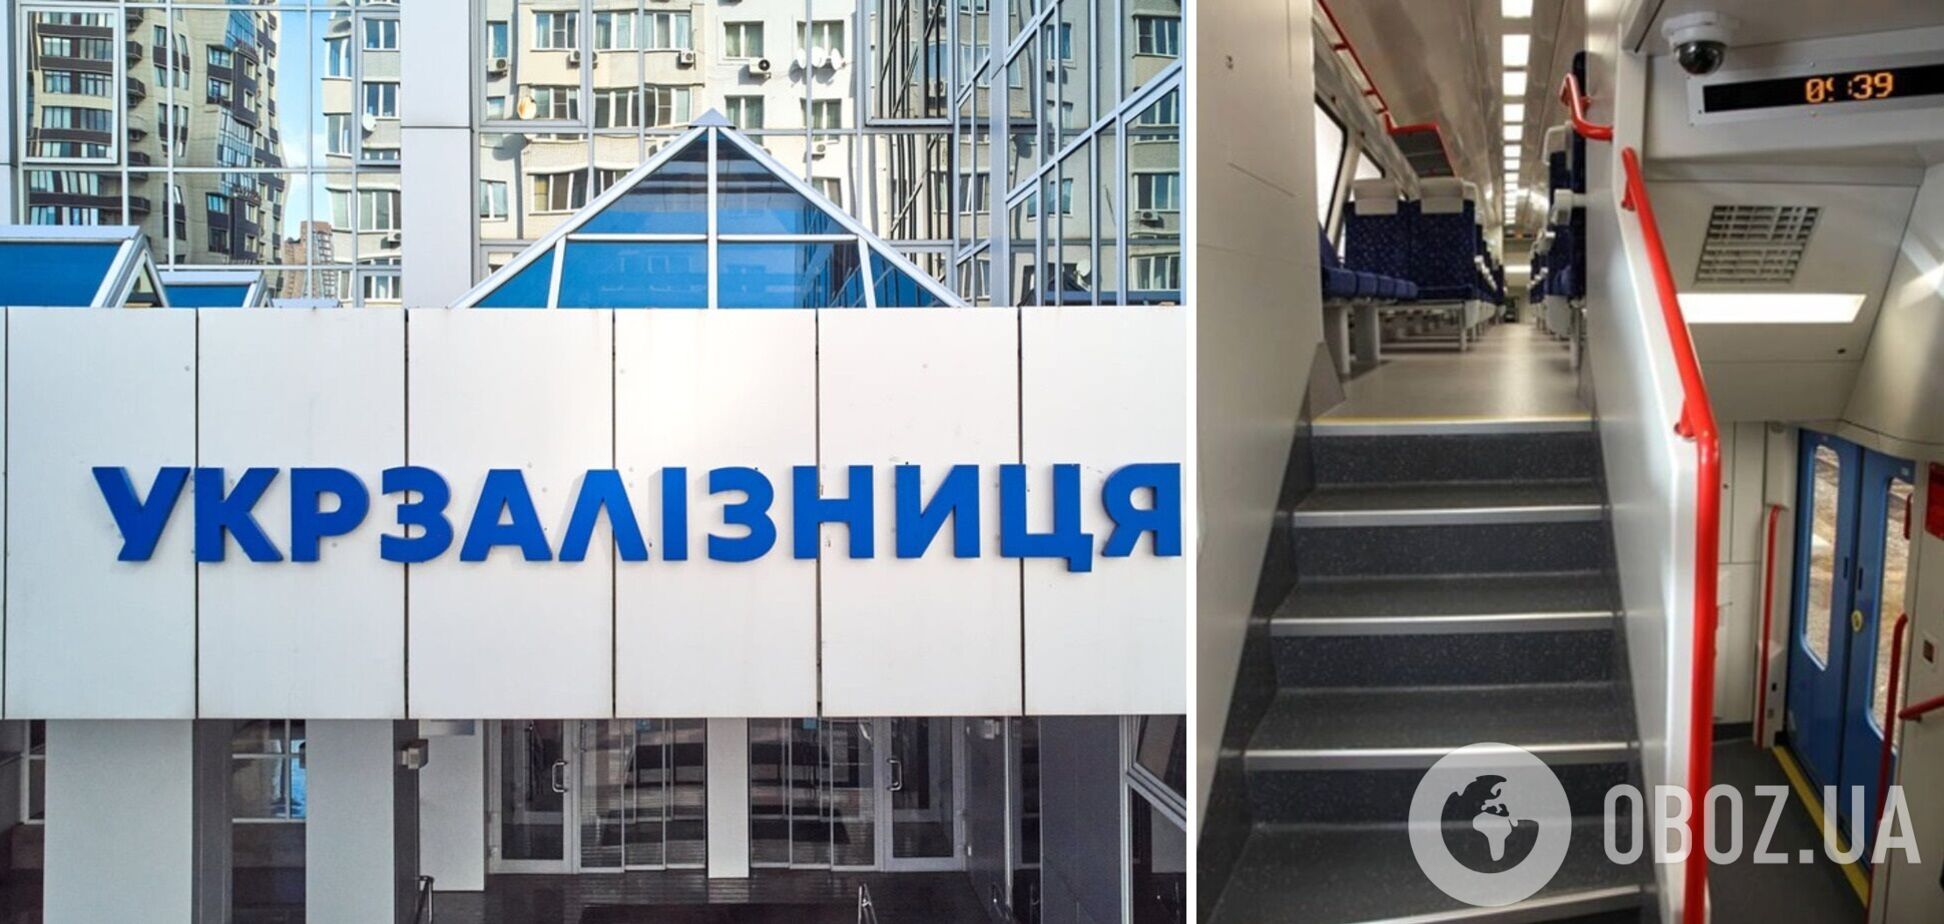 Українці їздитимуть двоповерховим поїздом: перший рейс – вже 30 грудня